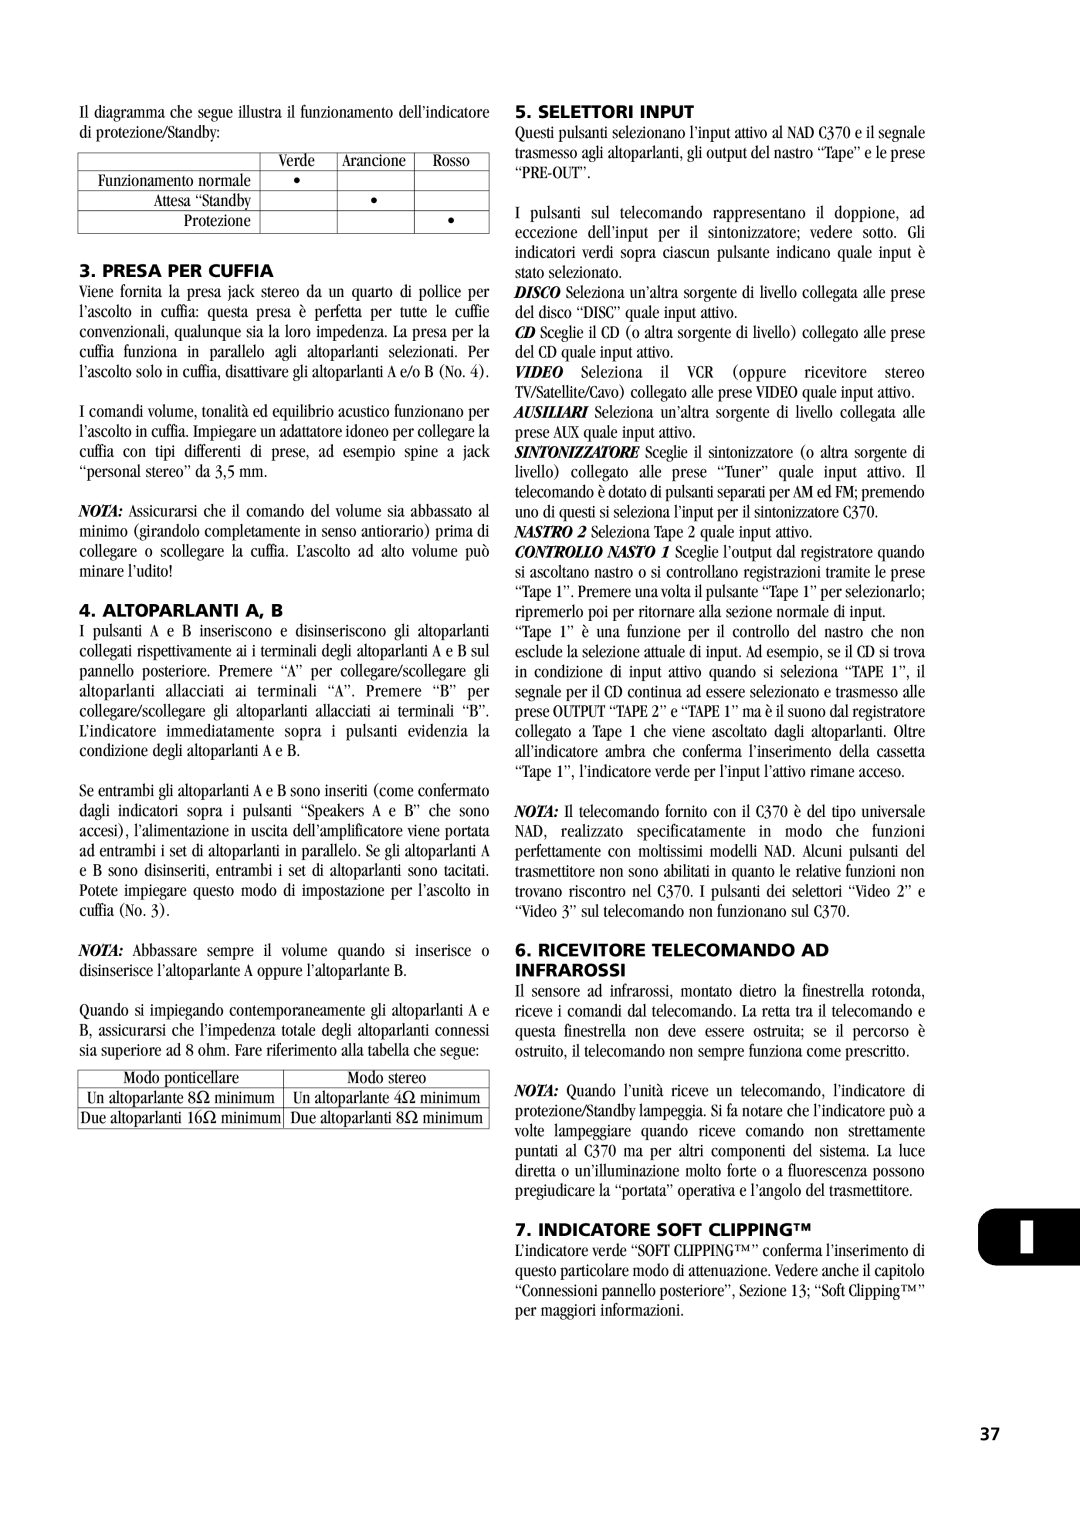 NAD C370 owner manual Presa Per Cuffia, Altoparlanti A, B, Selettori Input, Ricevitore Telecomando Ad Infrarossi 